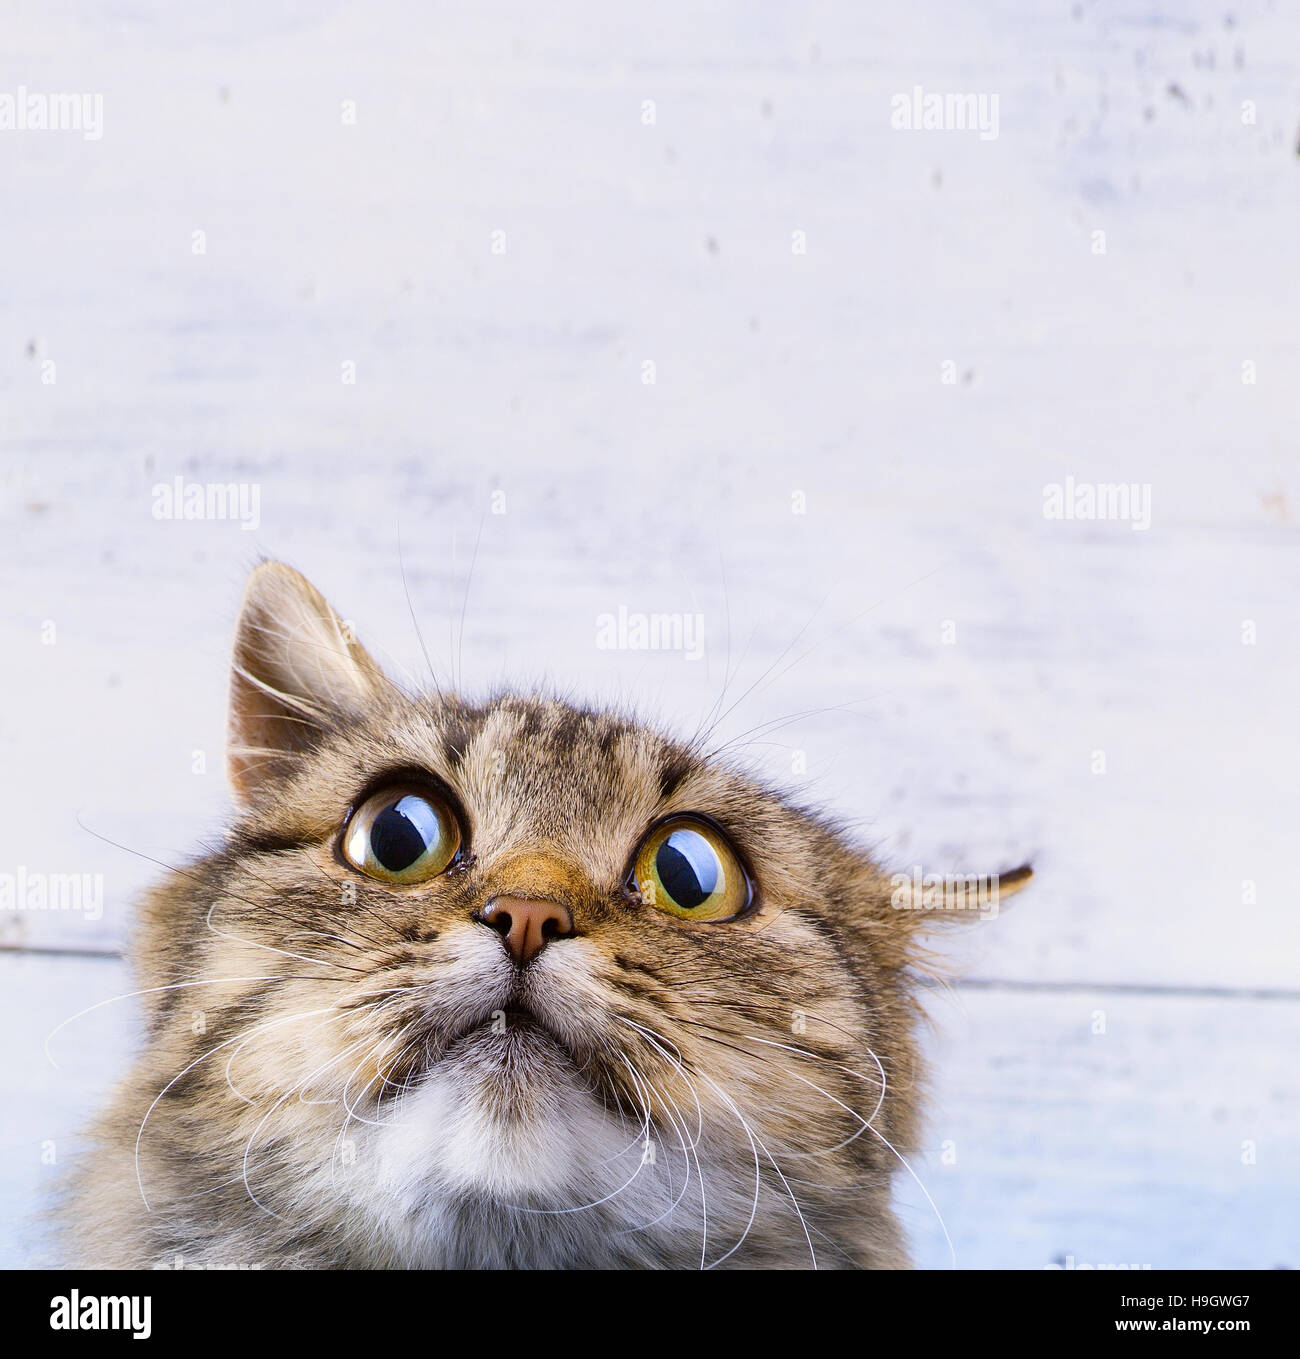 Surpris et effrayé chat gris à la recherche des yeux grand ouvert sur fond blanc Banque D'Images